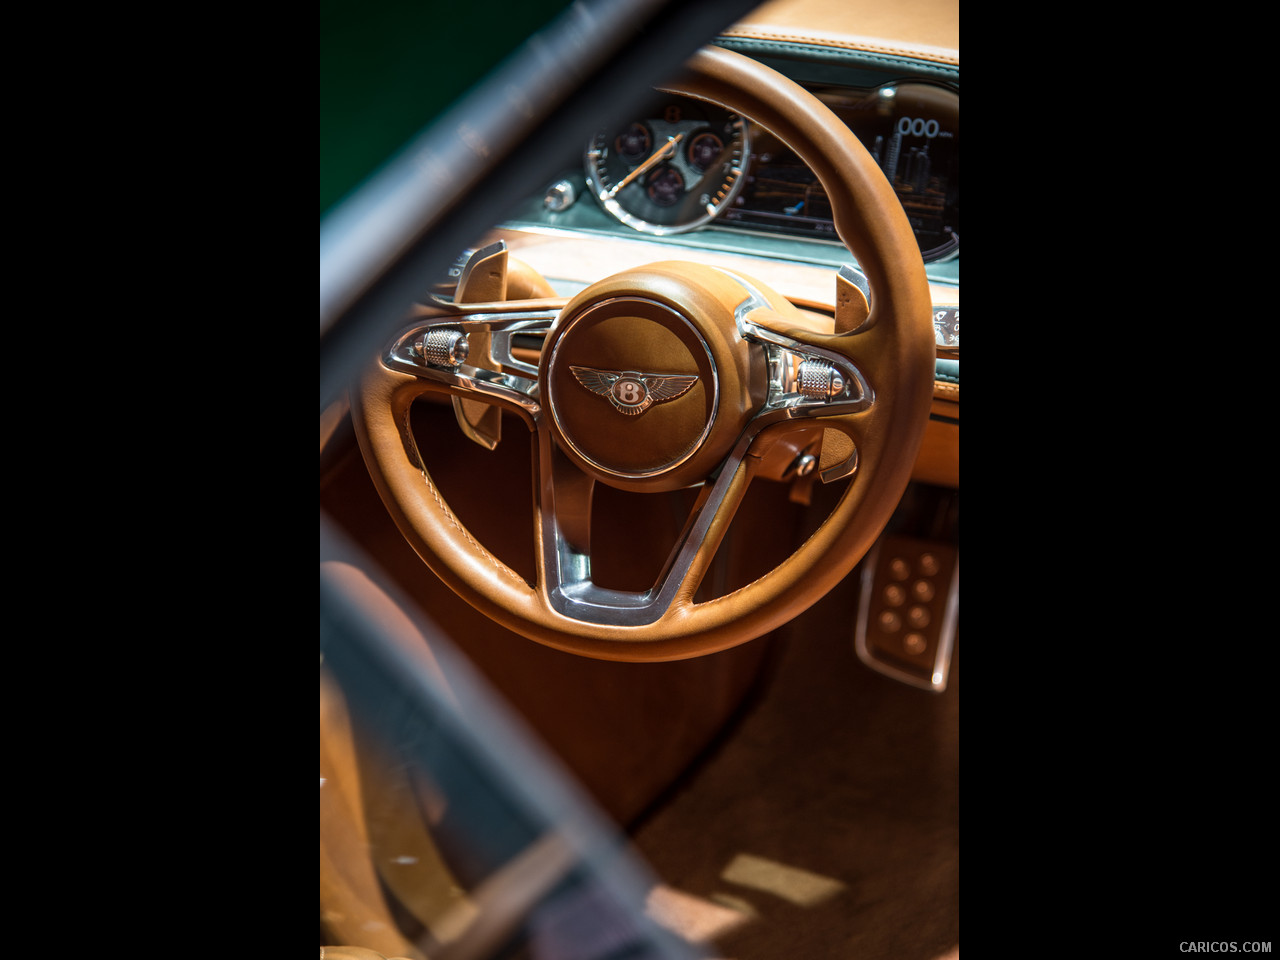 2015 Bentley EXP 10 Speed 6 Concept  Interior, 1280x960, 18 of 24